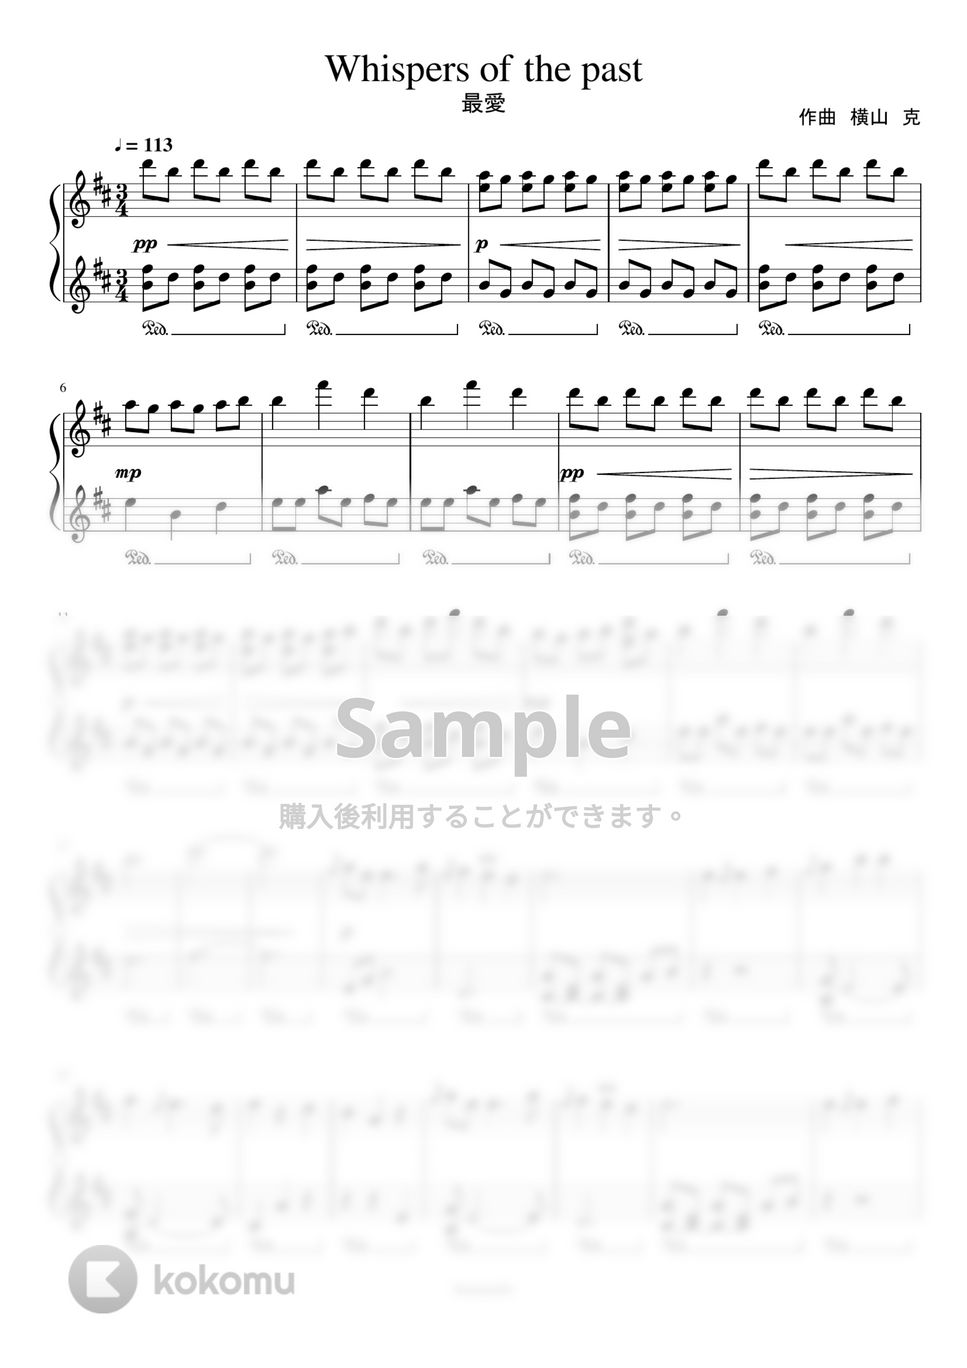 最愛 - Whispers of the past (陸上大会シーンドラマロングサイズ) by harmony piano